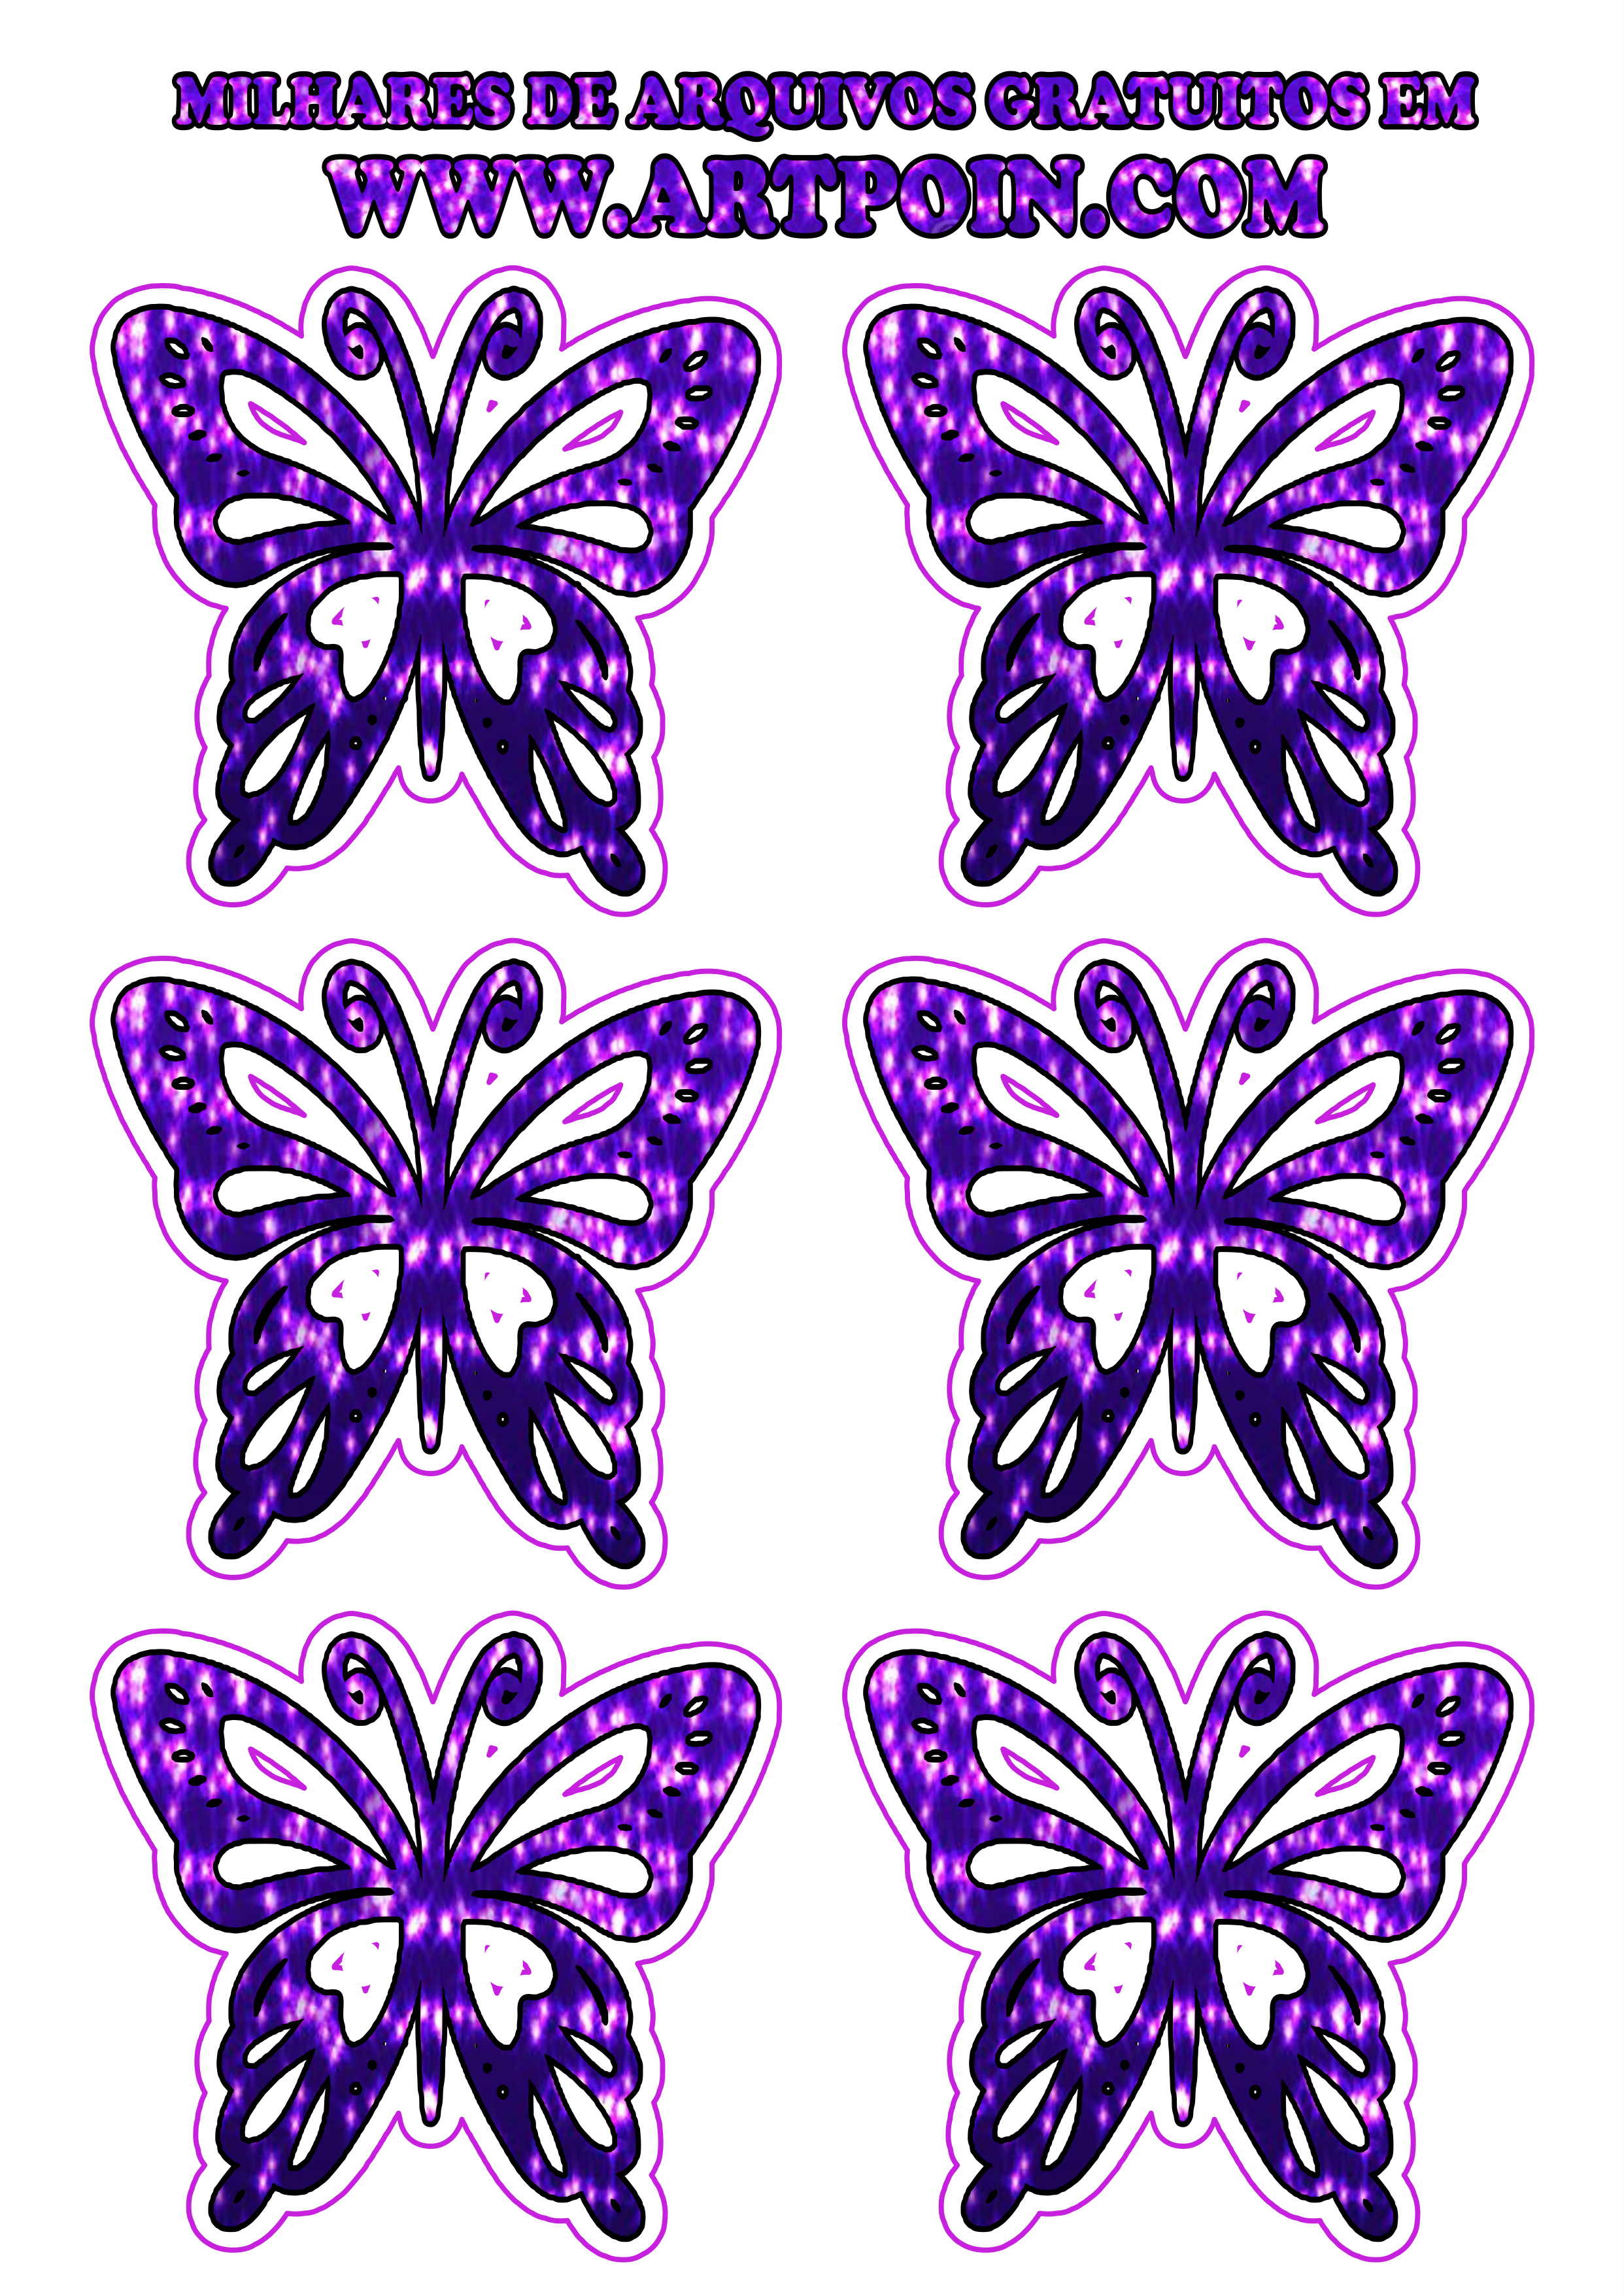 borboleta-dourada-com-lilas1111111